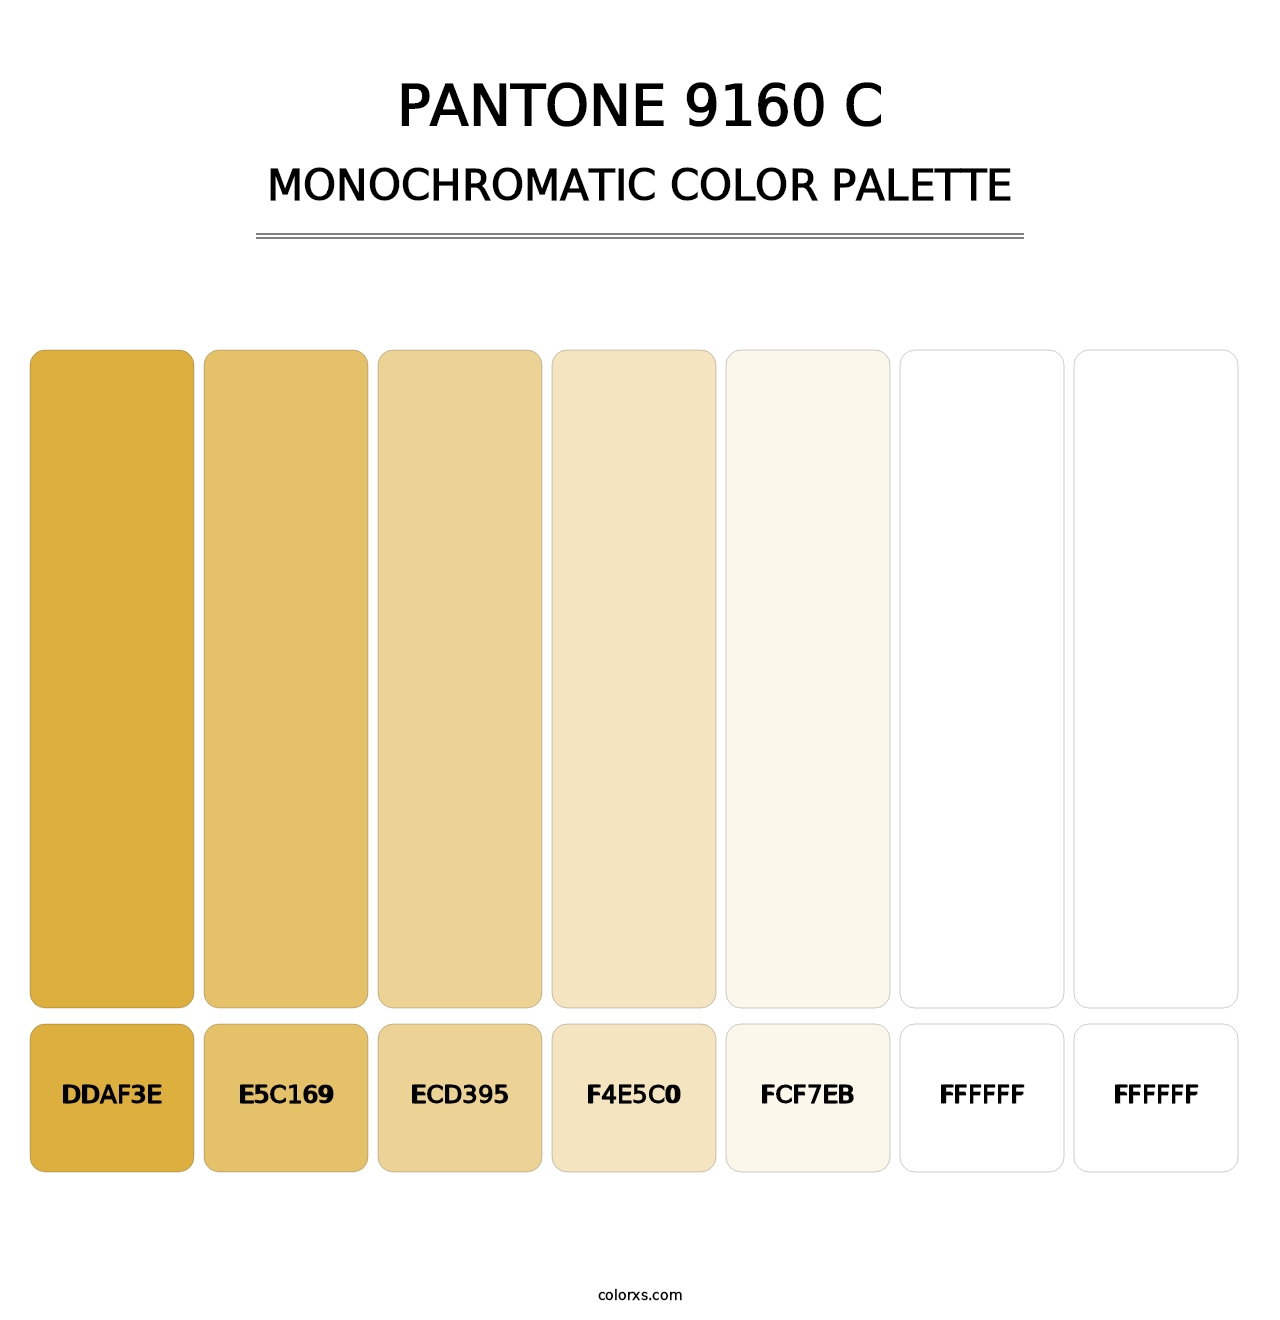 PANTONE 9160 C - Monochromatic Color Palette